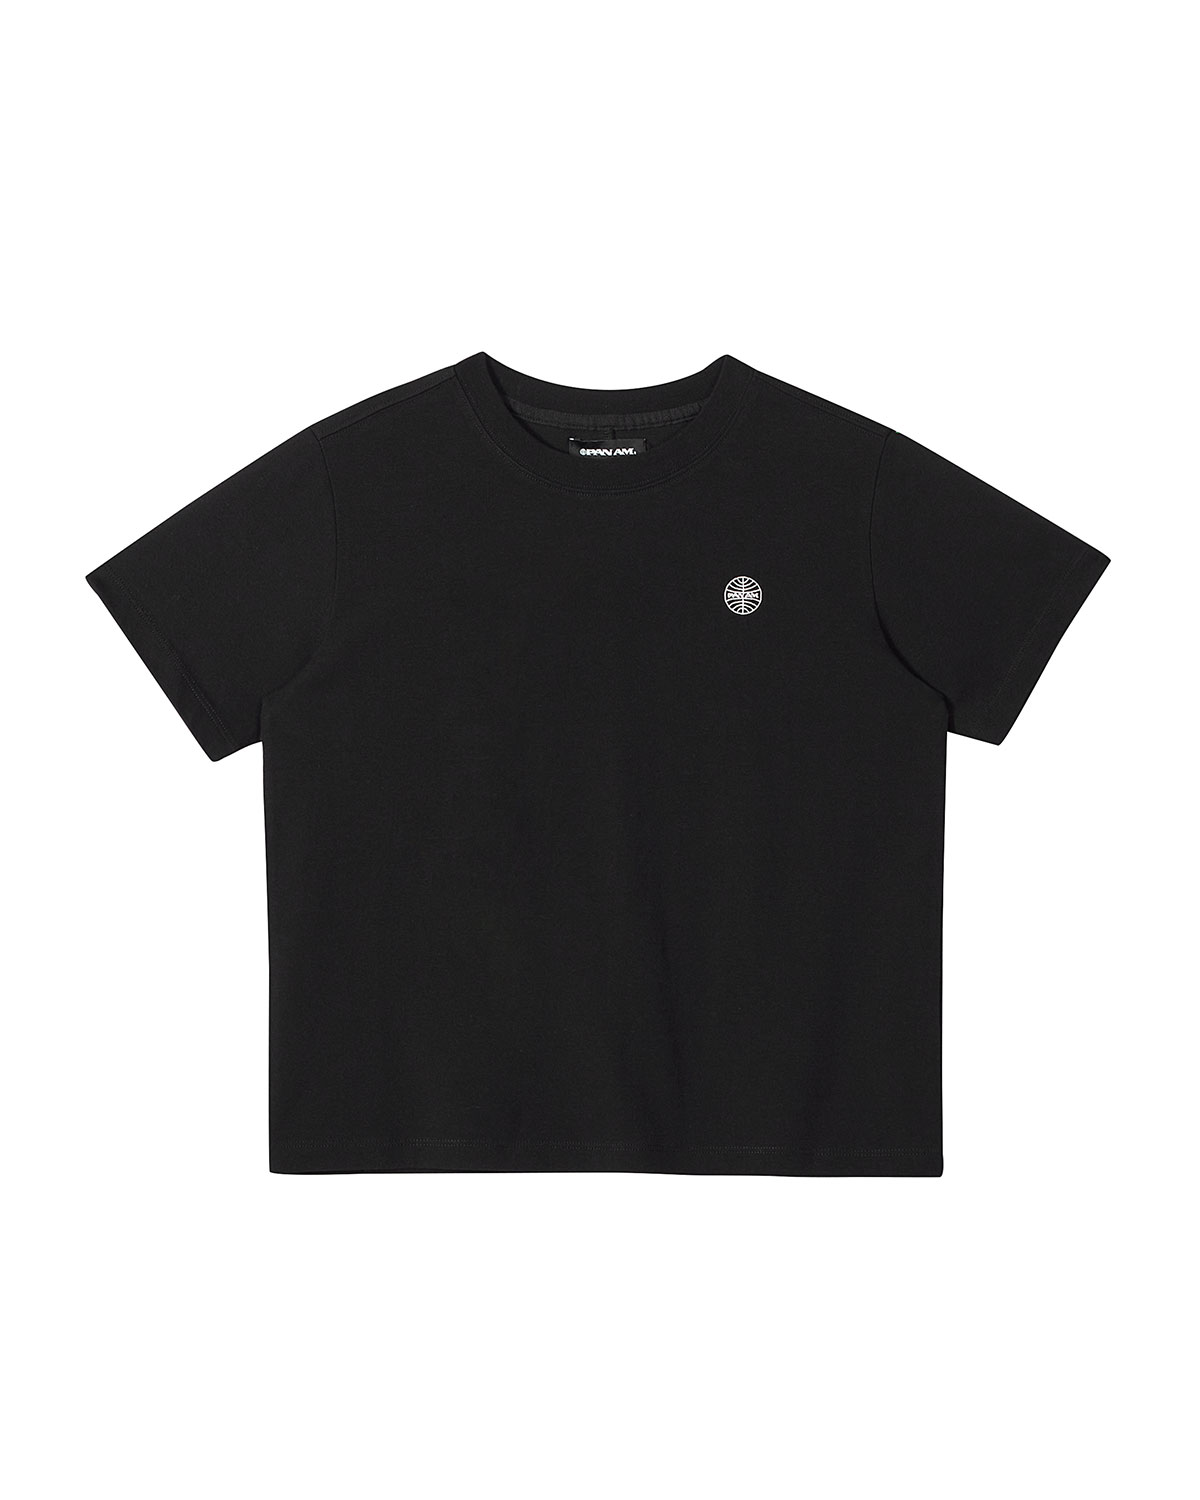 우먼스 베이직 미트볼 티셔츠 1164 블랙